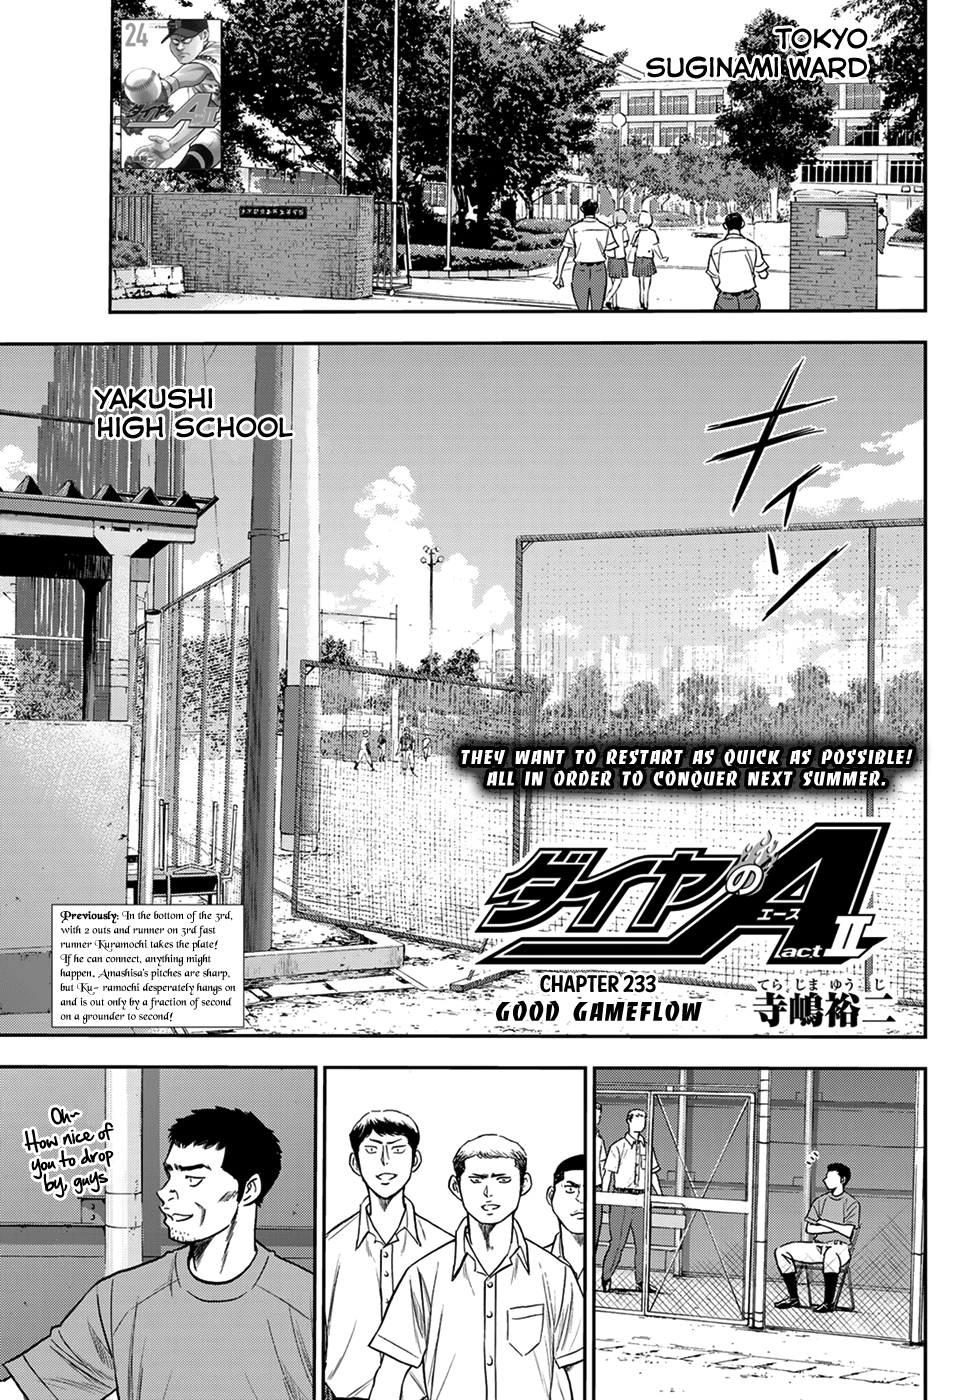 Daiya No A - Act Ii - Page 1